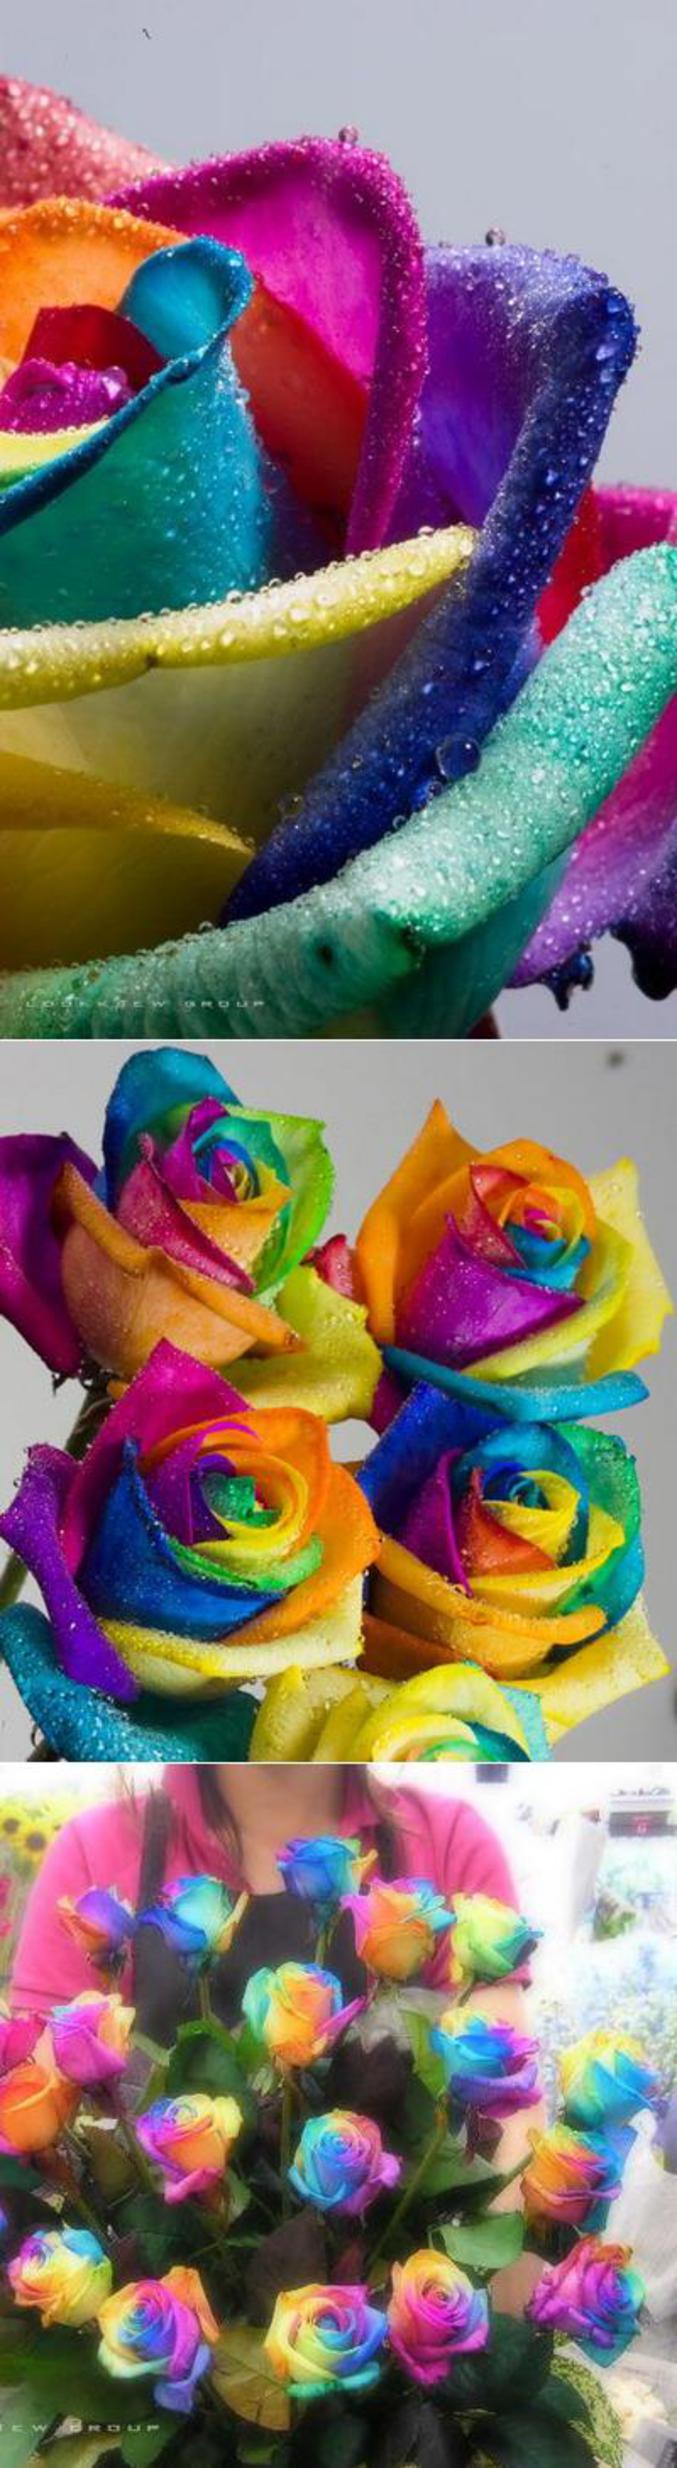 Une fleur originale aux pétales de sept couleurs différentes.